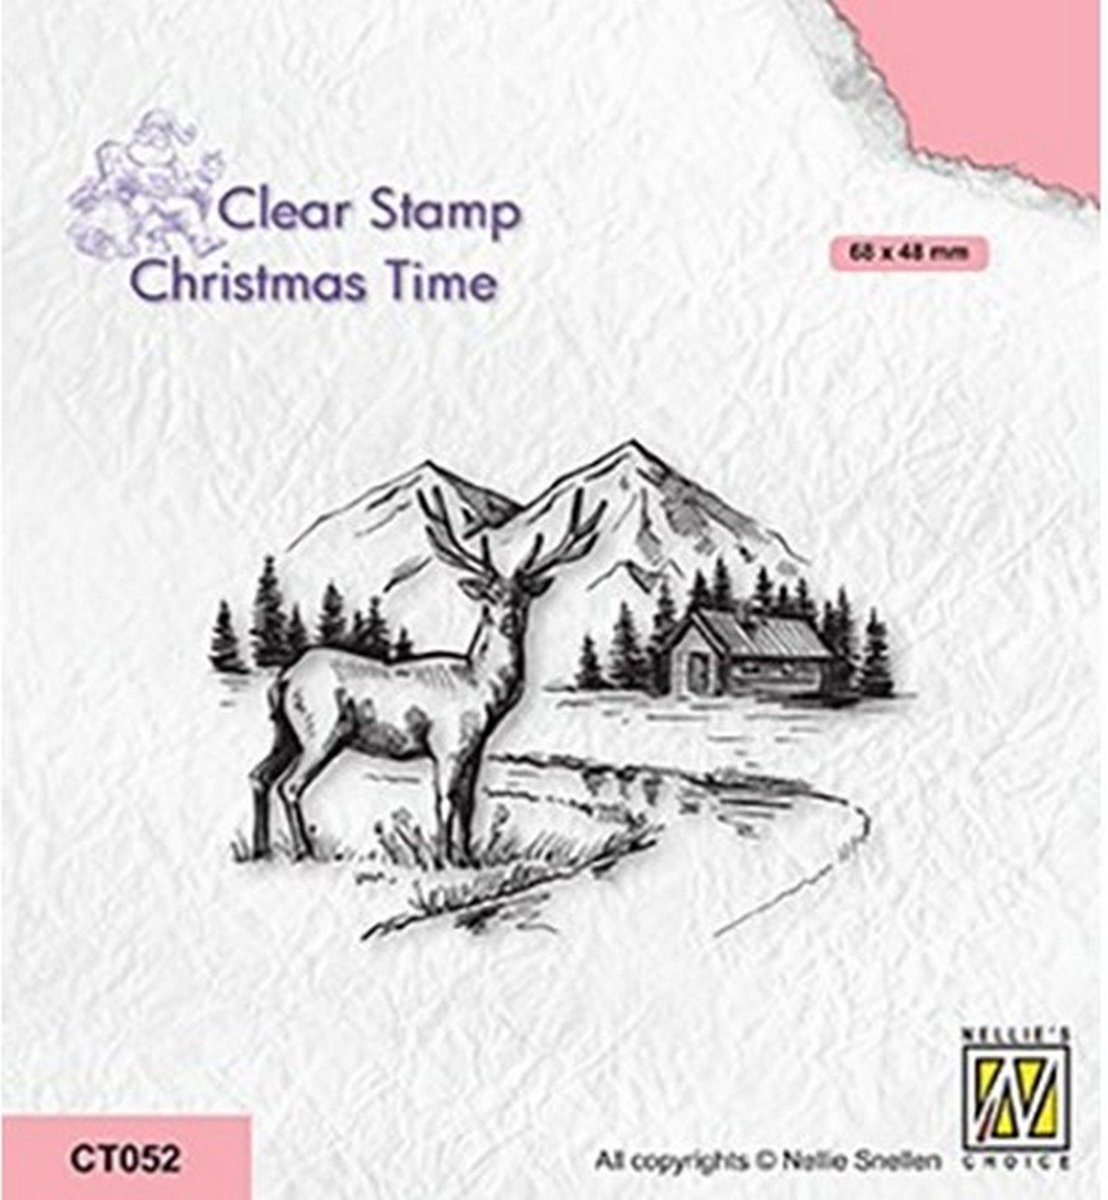 CT052 - Nellie Snellen Christmas Time Clear Stamp Winter Landscape with Deer - stempel winter landschap kerst - winterlandschap met rendier hert